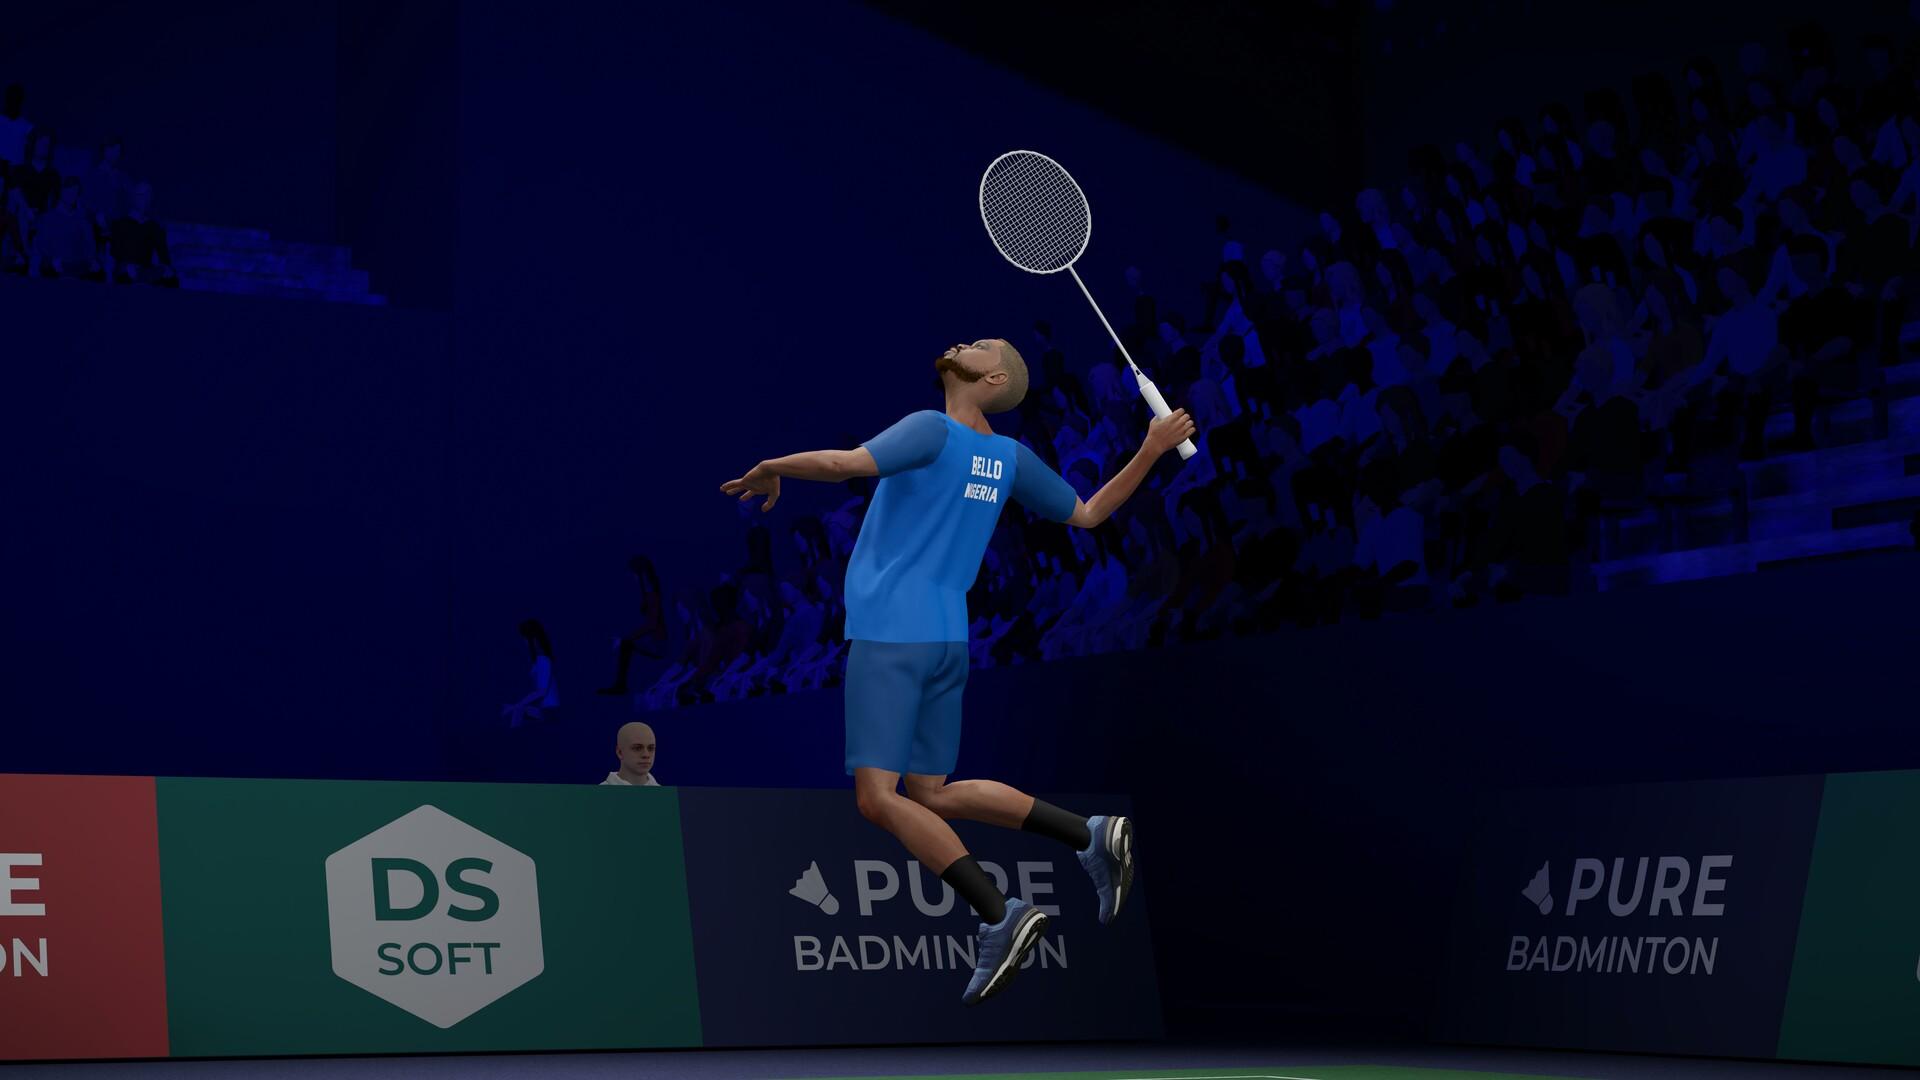 Pure Badminton screenshot game